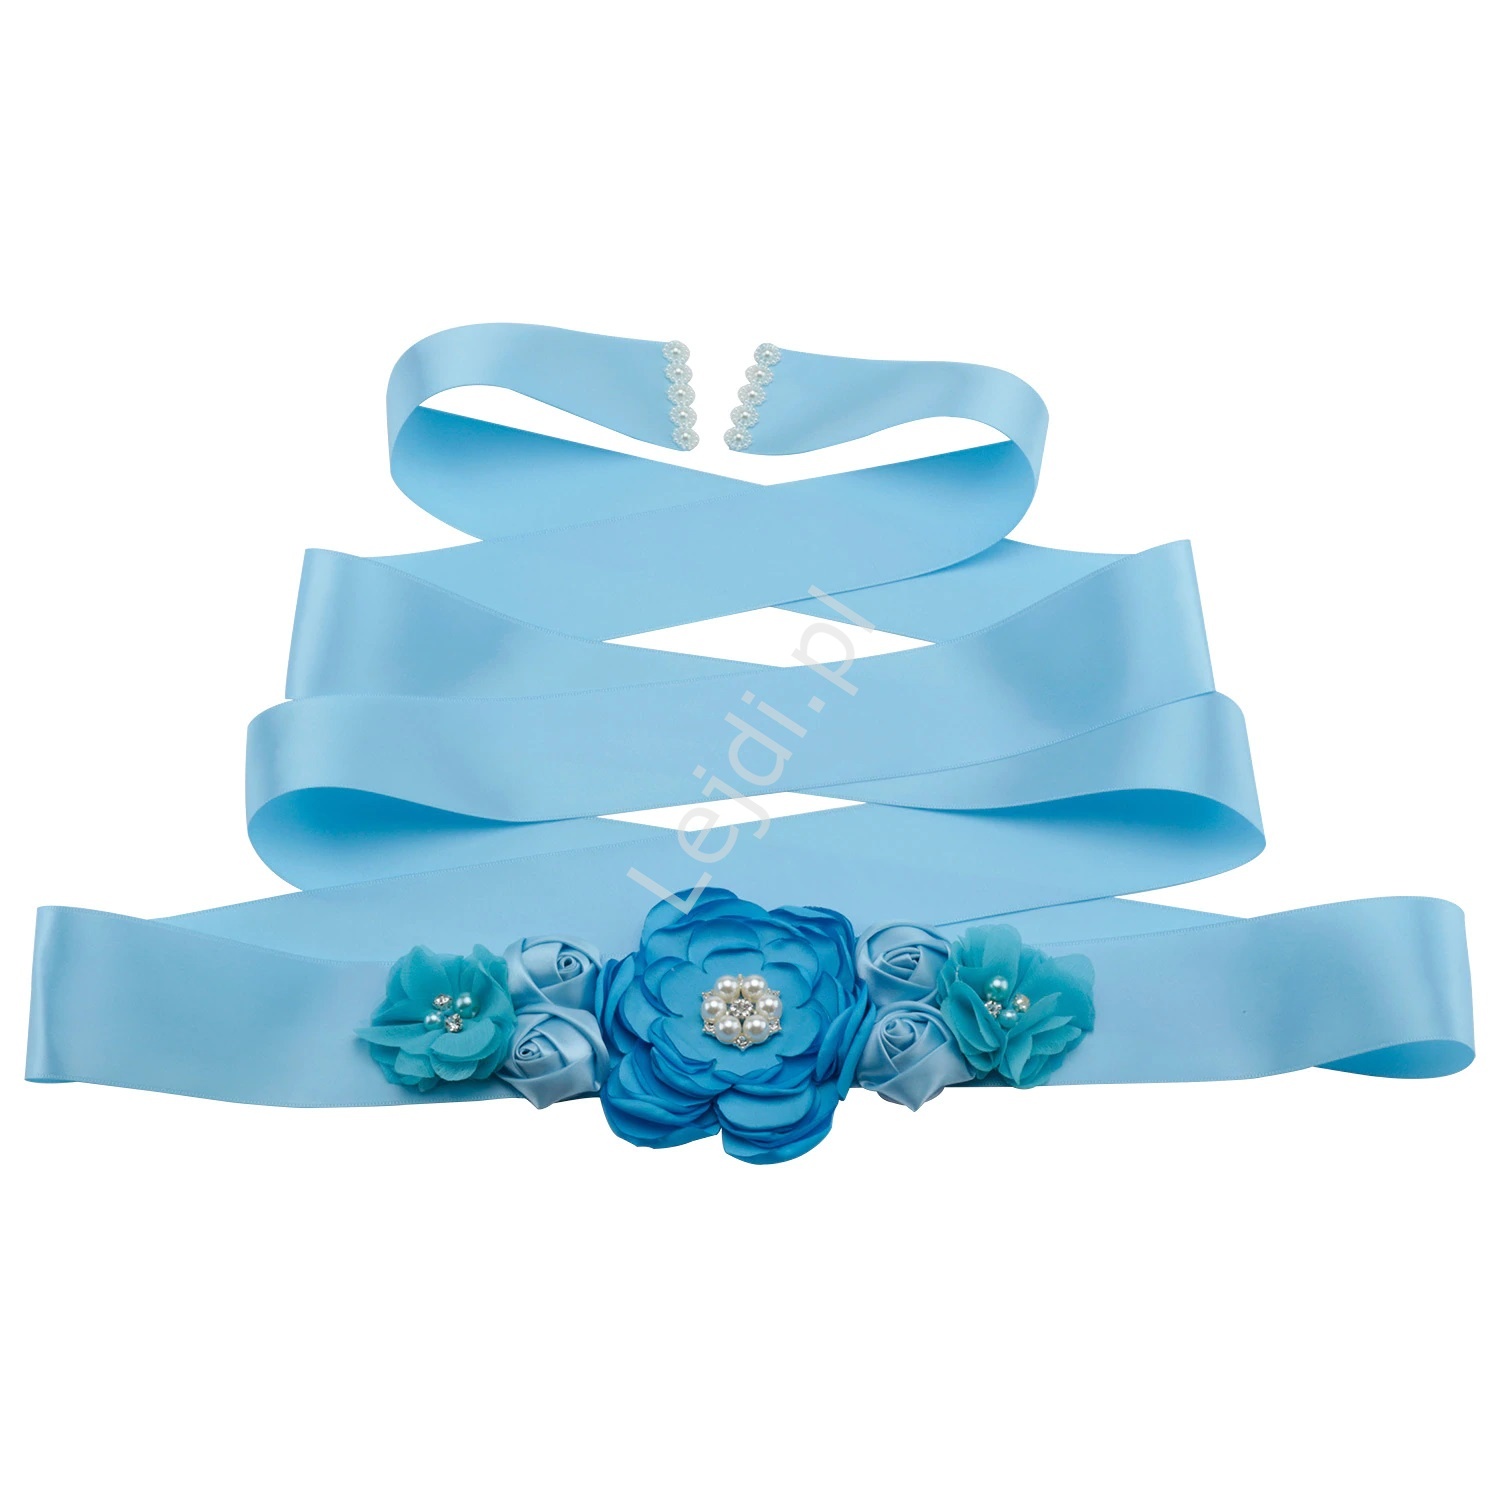 Błękitny pasek wieczorowy z kwiatami 3D, podkreślający talię w sukniach i kombinezonach